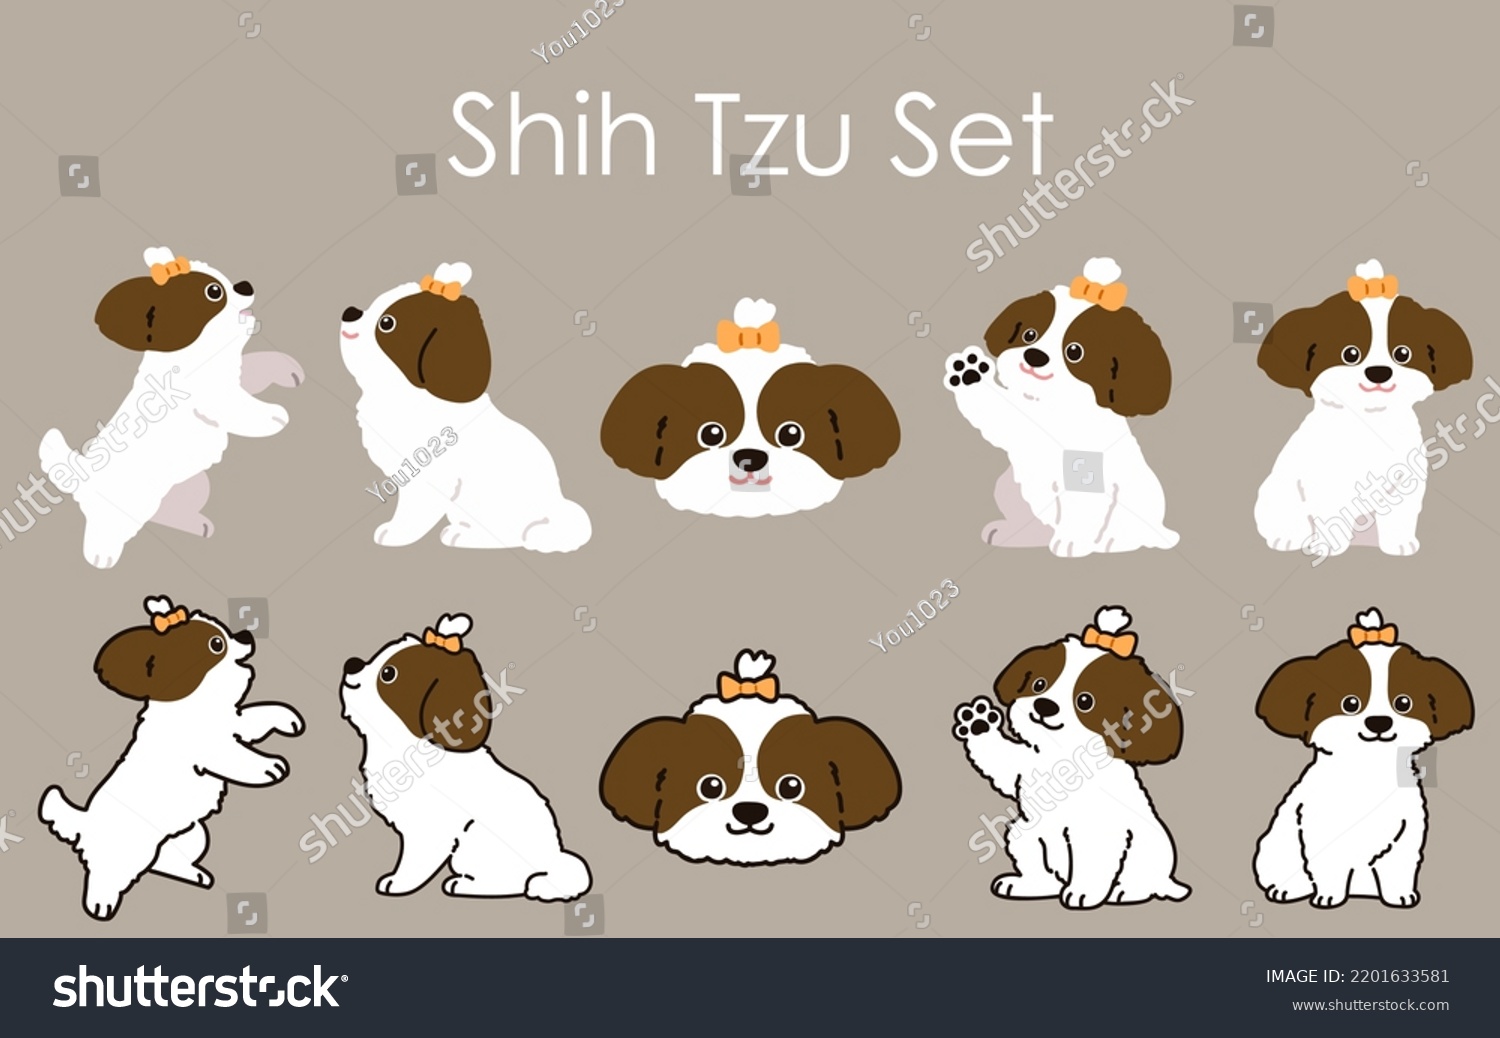 SVG of Simple and adorable Shih Tzu illustrations set svg